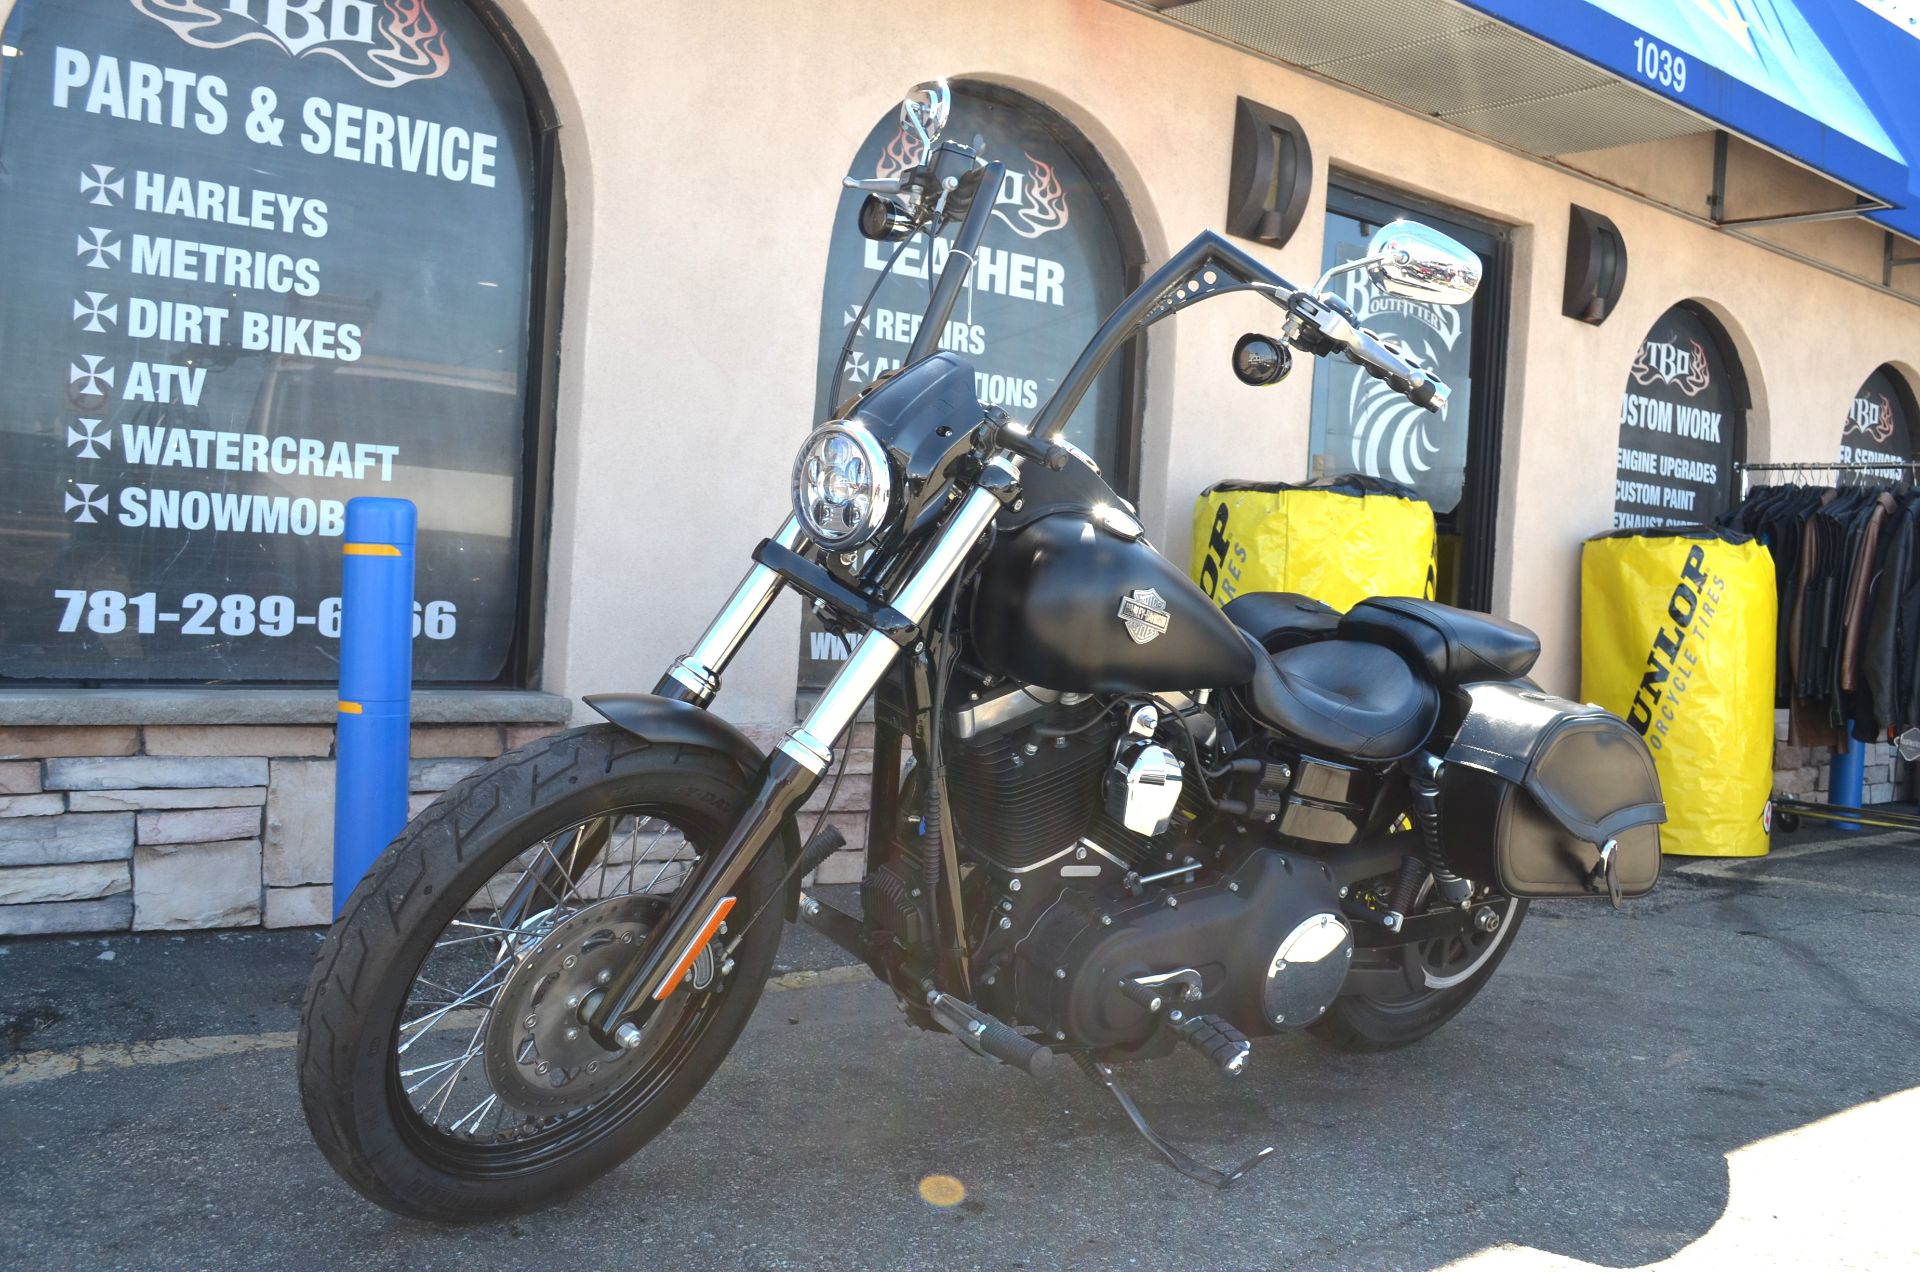 2013 Harley Davidson FXDB in Revere, Massachusetts - Photo 6